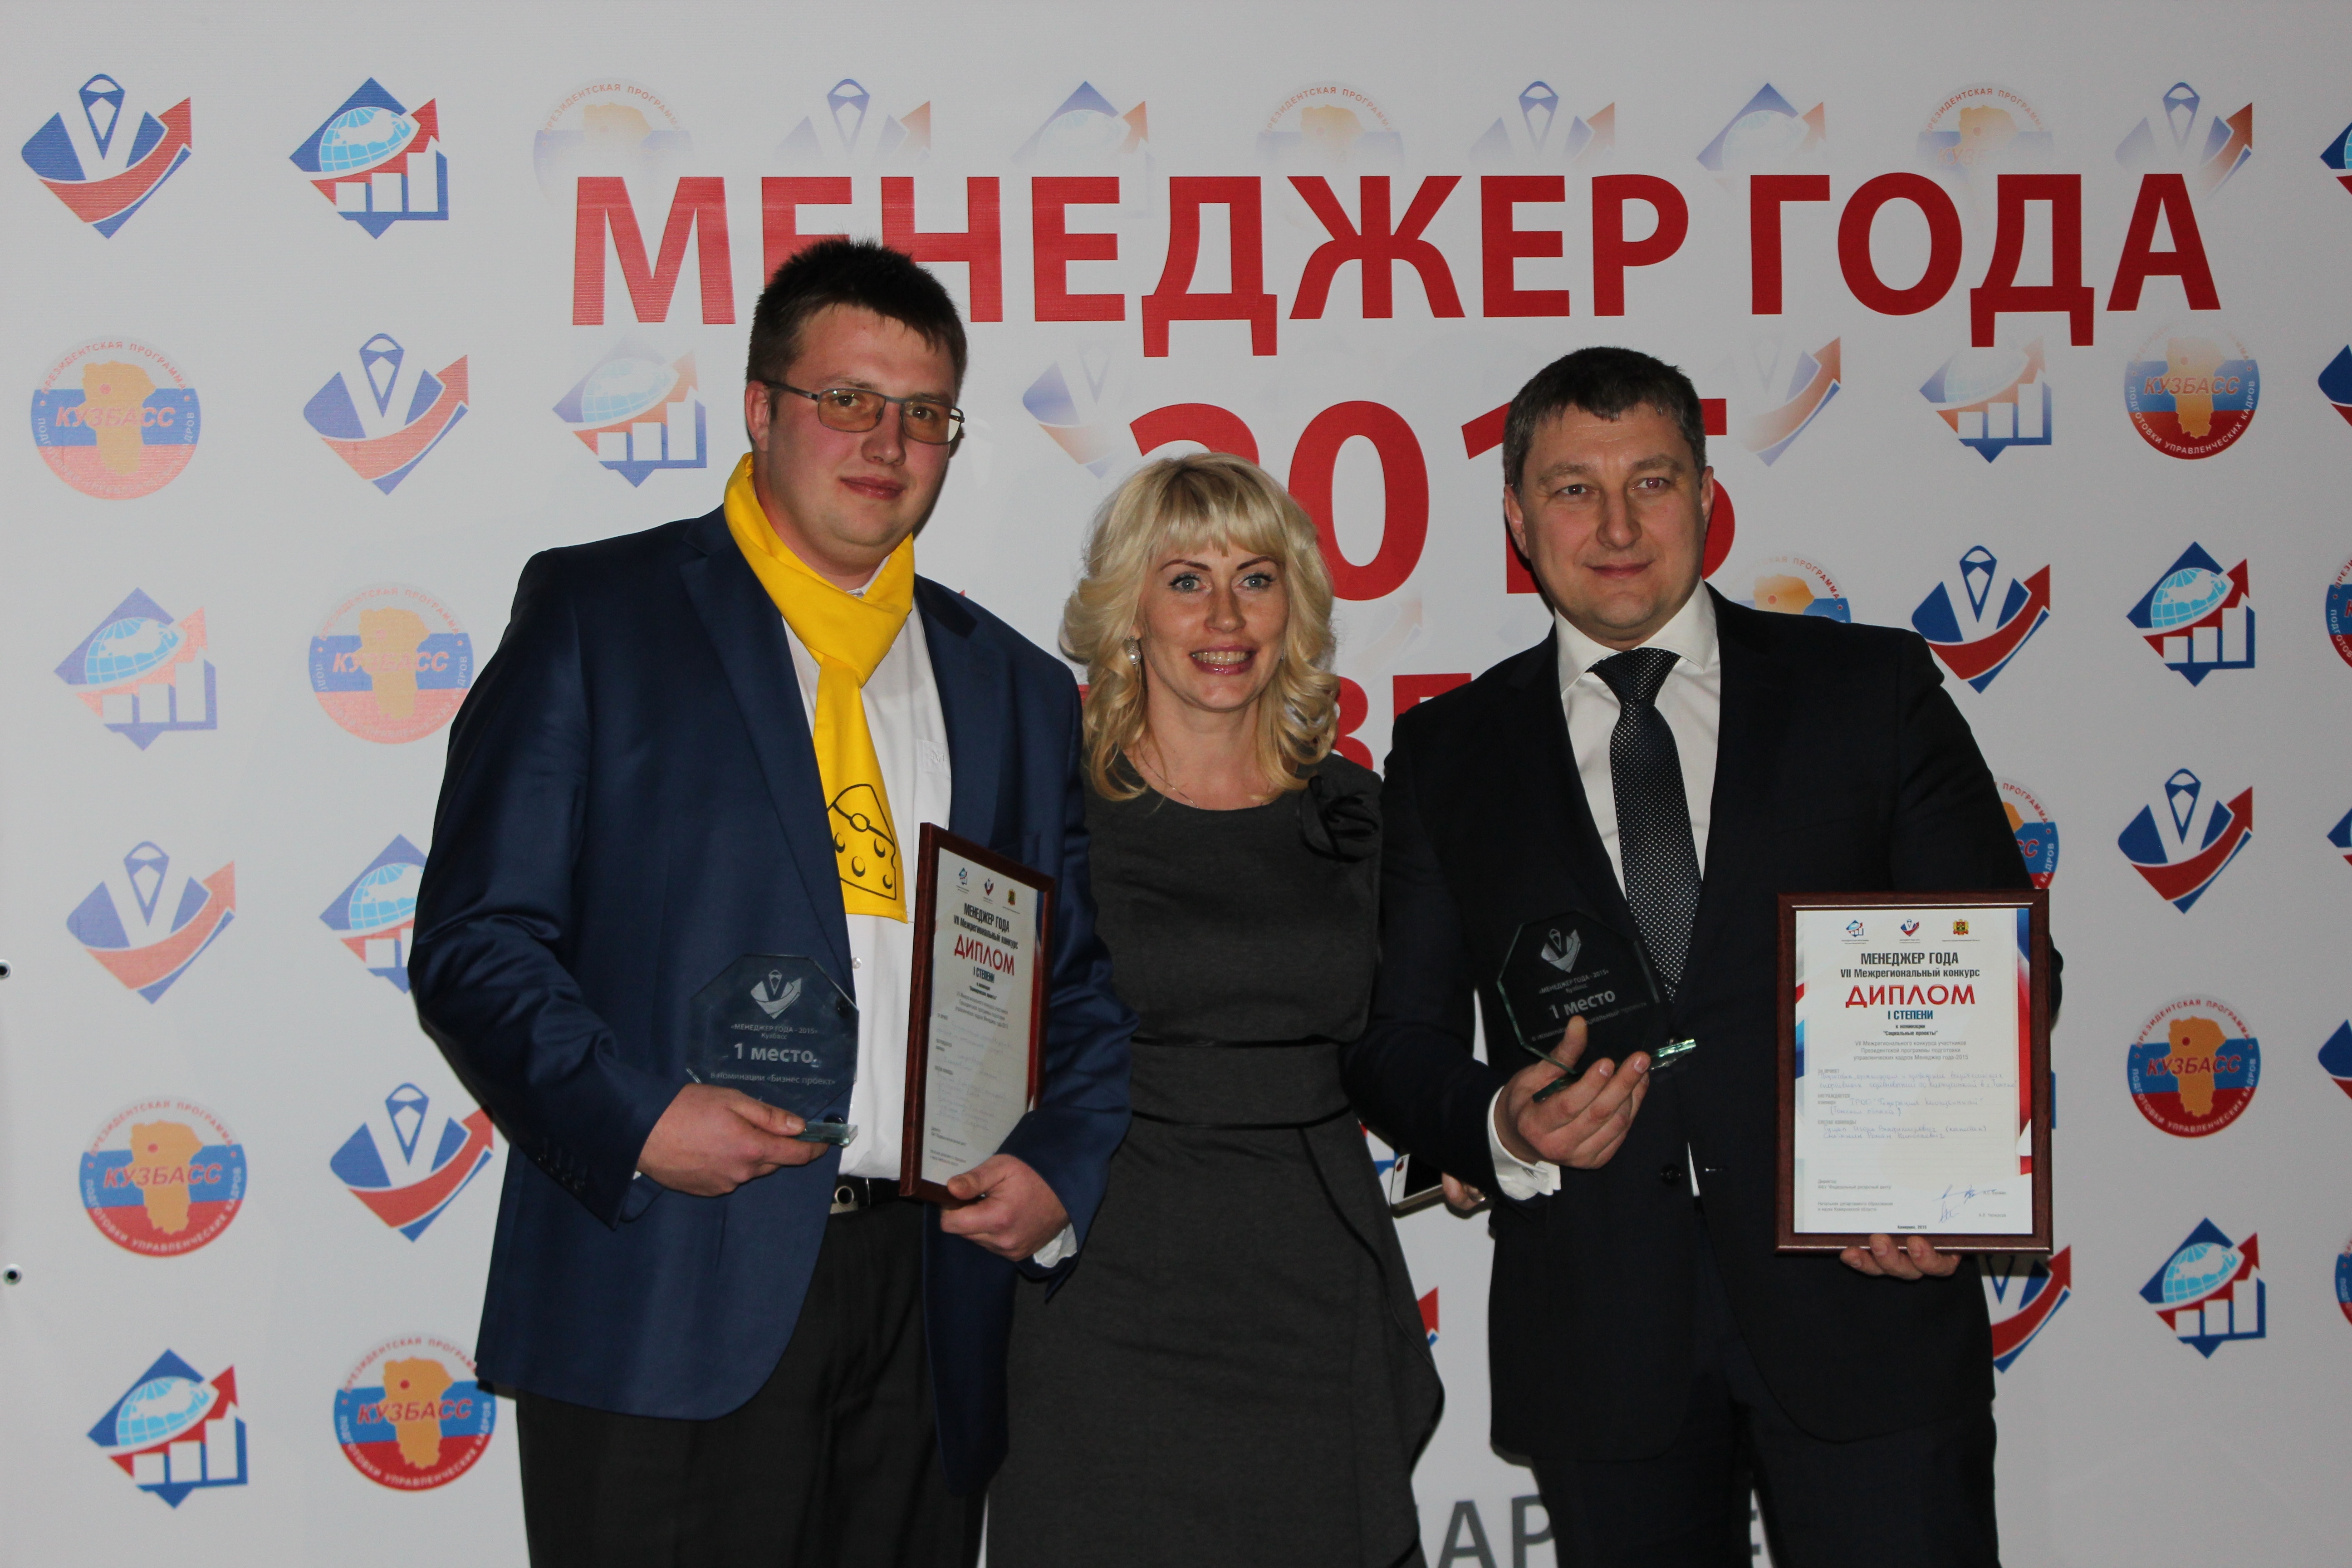  Кузбасские выпускники Президентской программы подготовки управленческих кадров одержали победу в VII межрегиональном конкурсе «Менеджер года 2015», который проходил в г. Кемерово